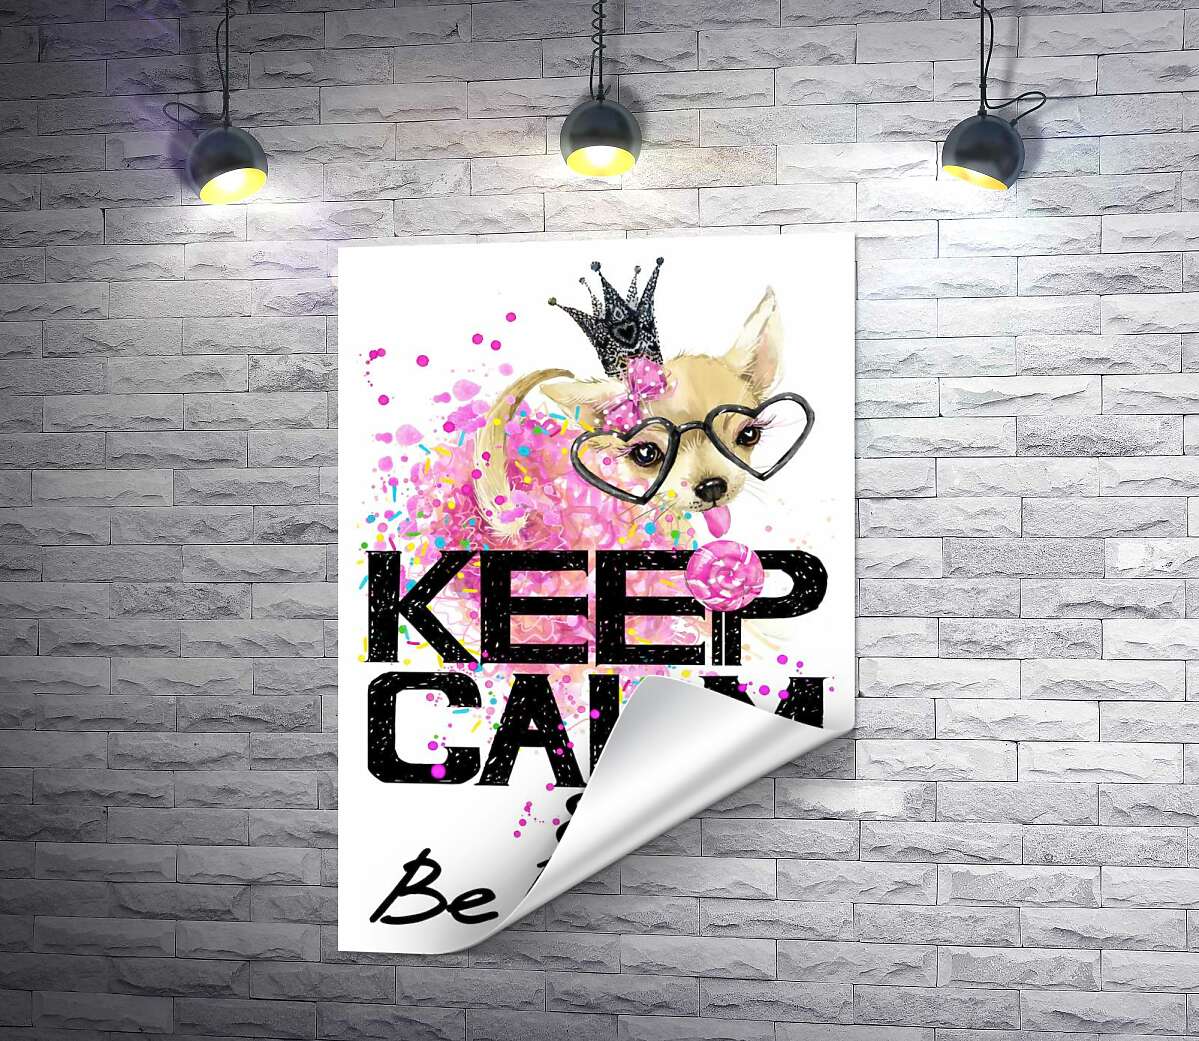 печать Чихуахуа в пышной юбке с леденцом среди надписи "keep calm and be princess"